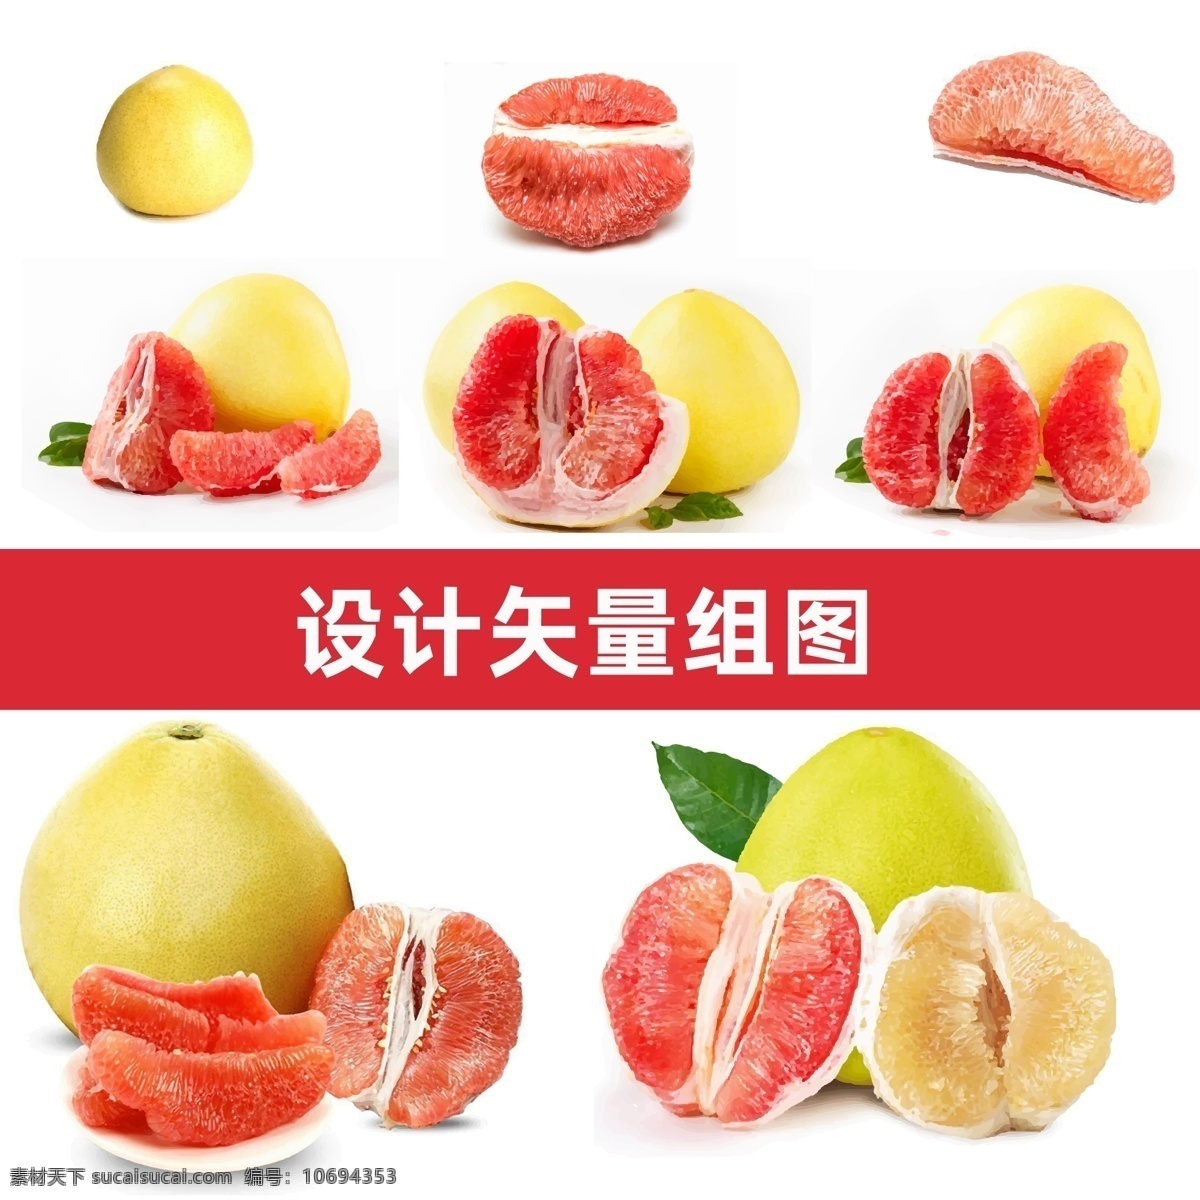 红心柚 红心柚矢量 柚子矢量 水果高清素材 水果矢量 水果 分层